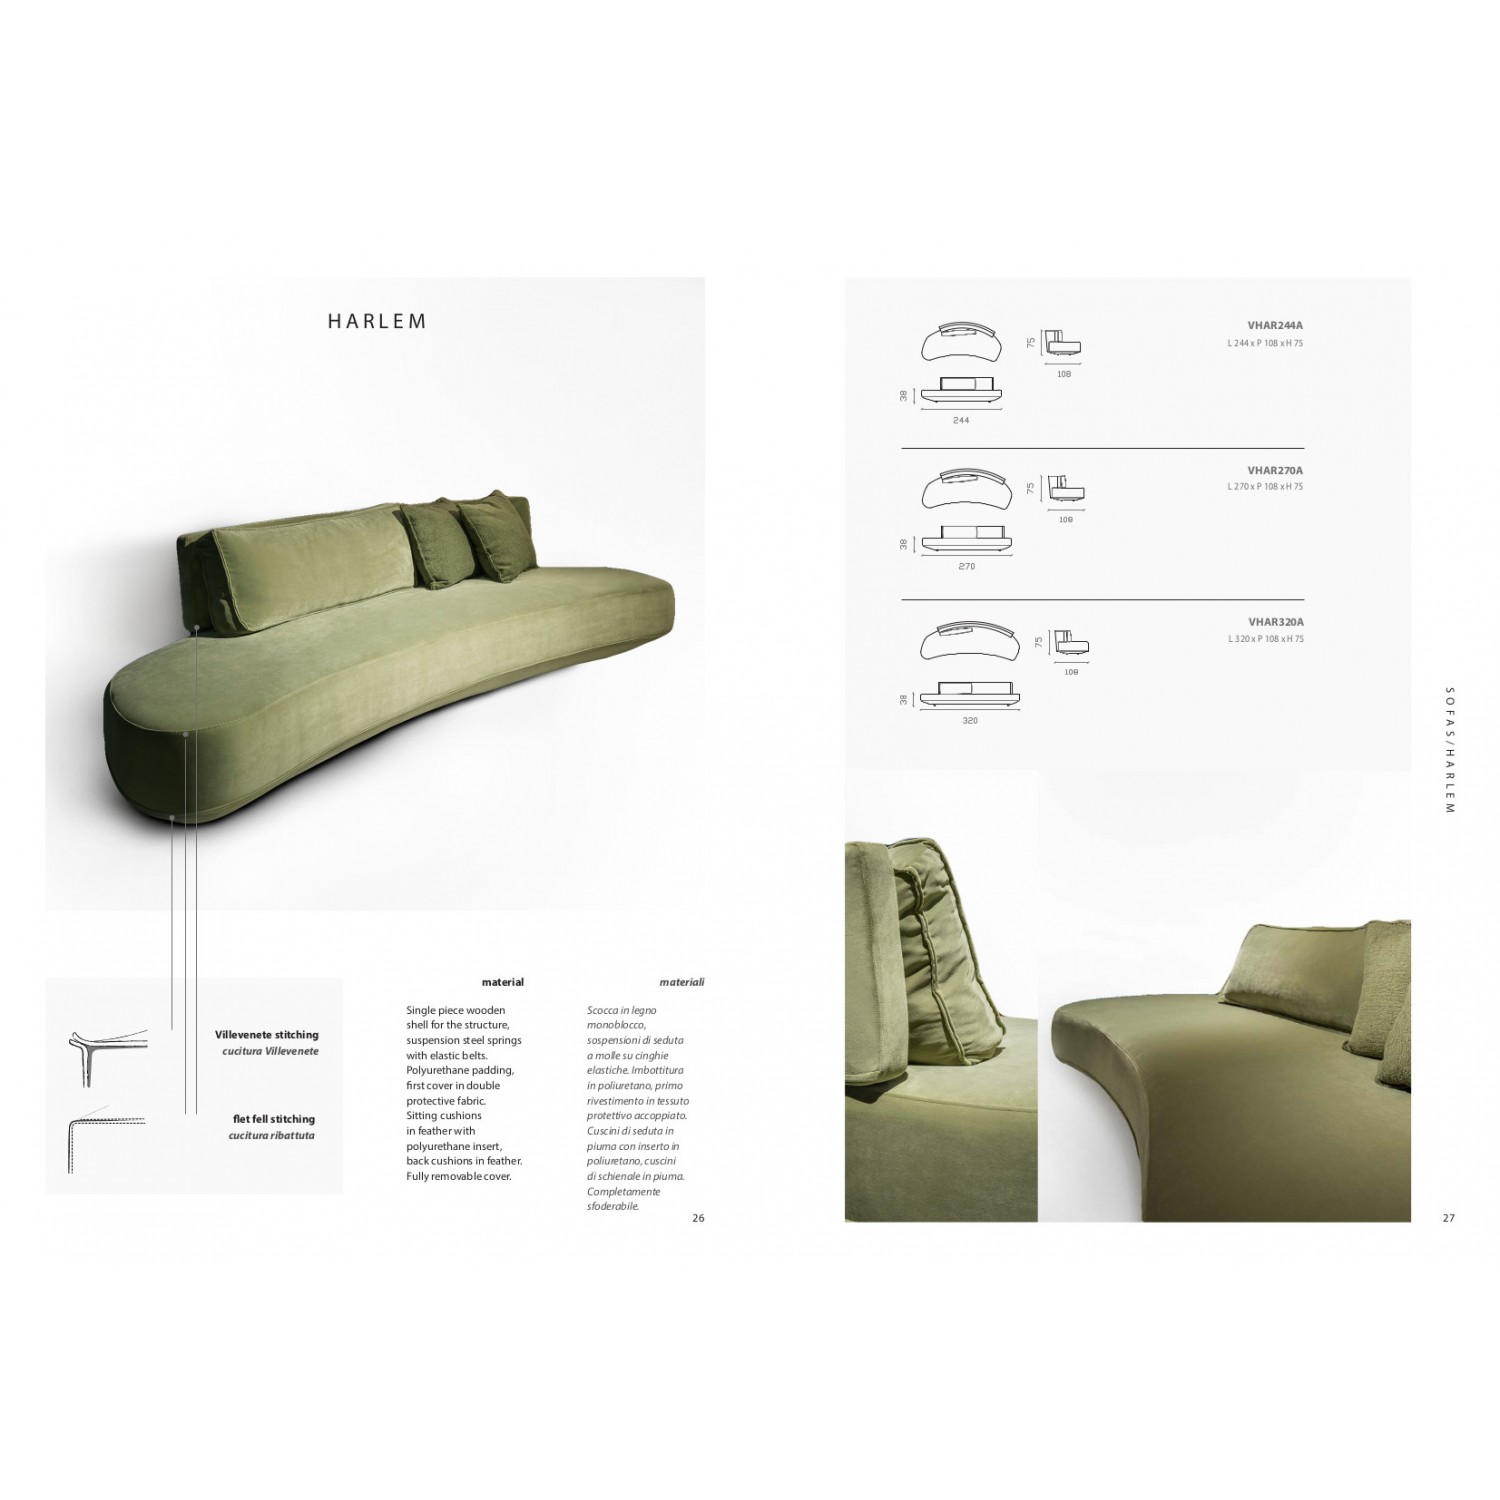 Divano/ sofas Harlem cm 244 sfoderabile, cuscini in piuma con inser. poliuret.